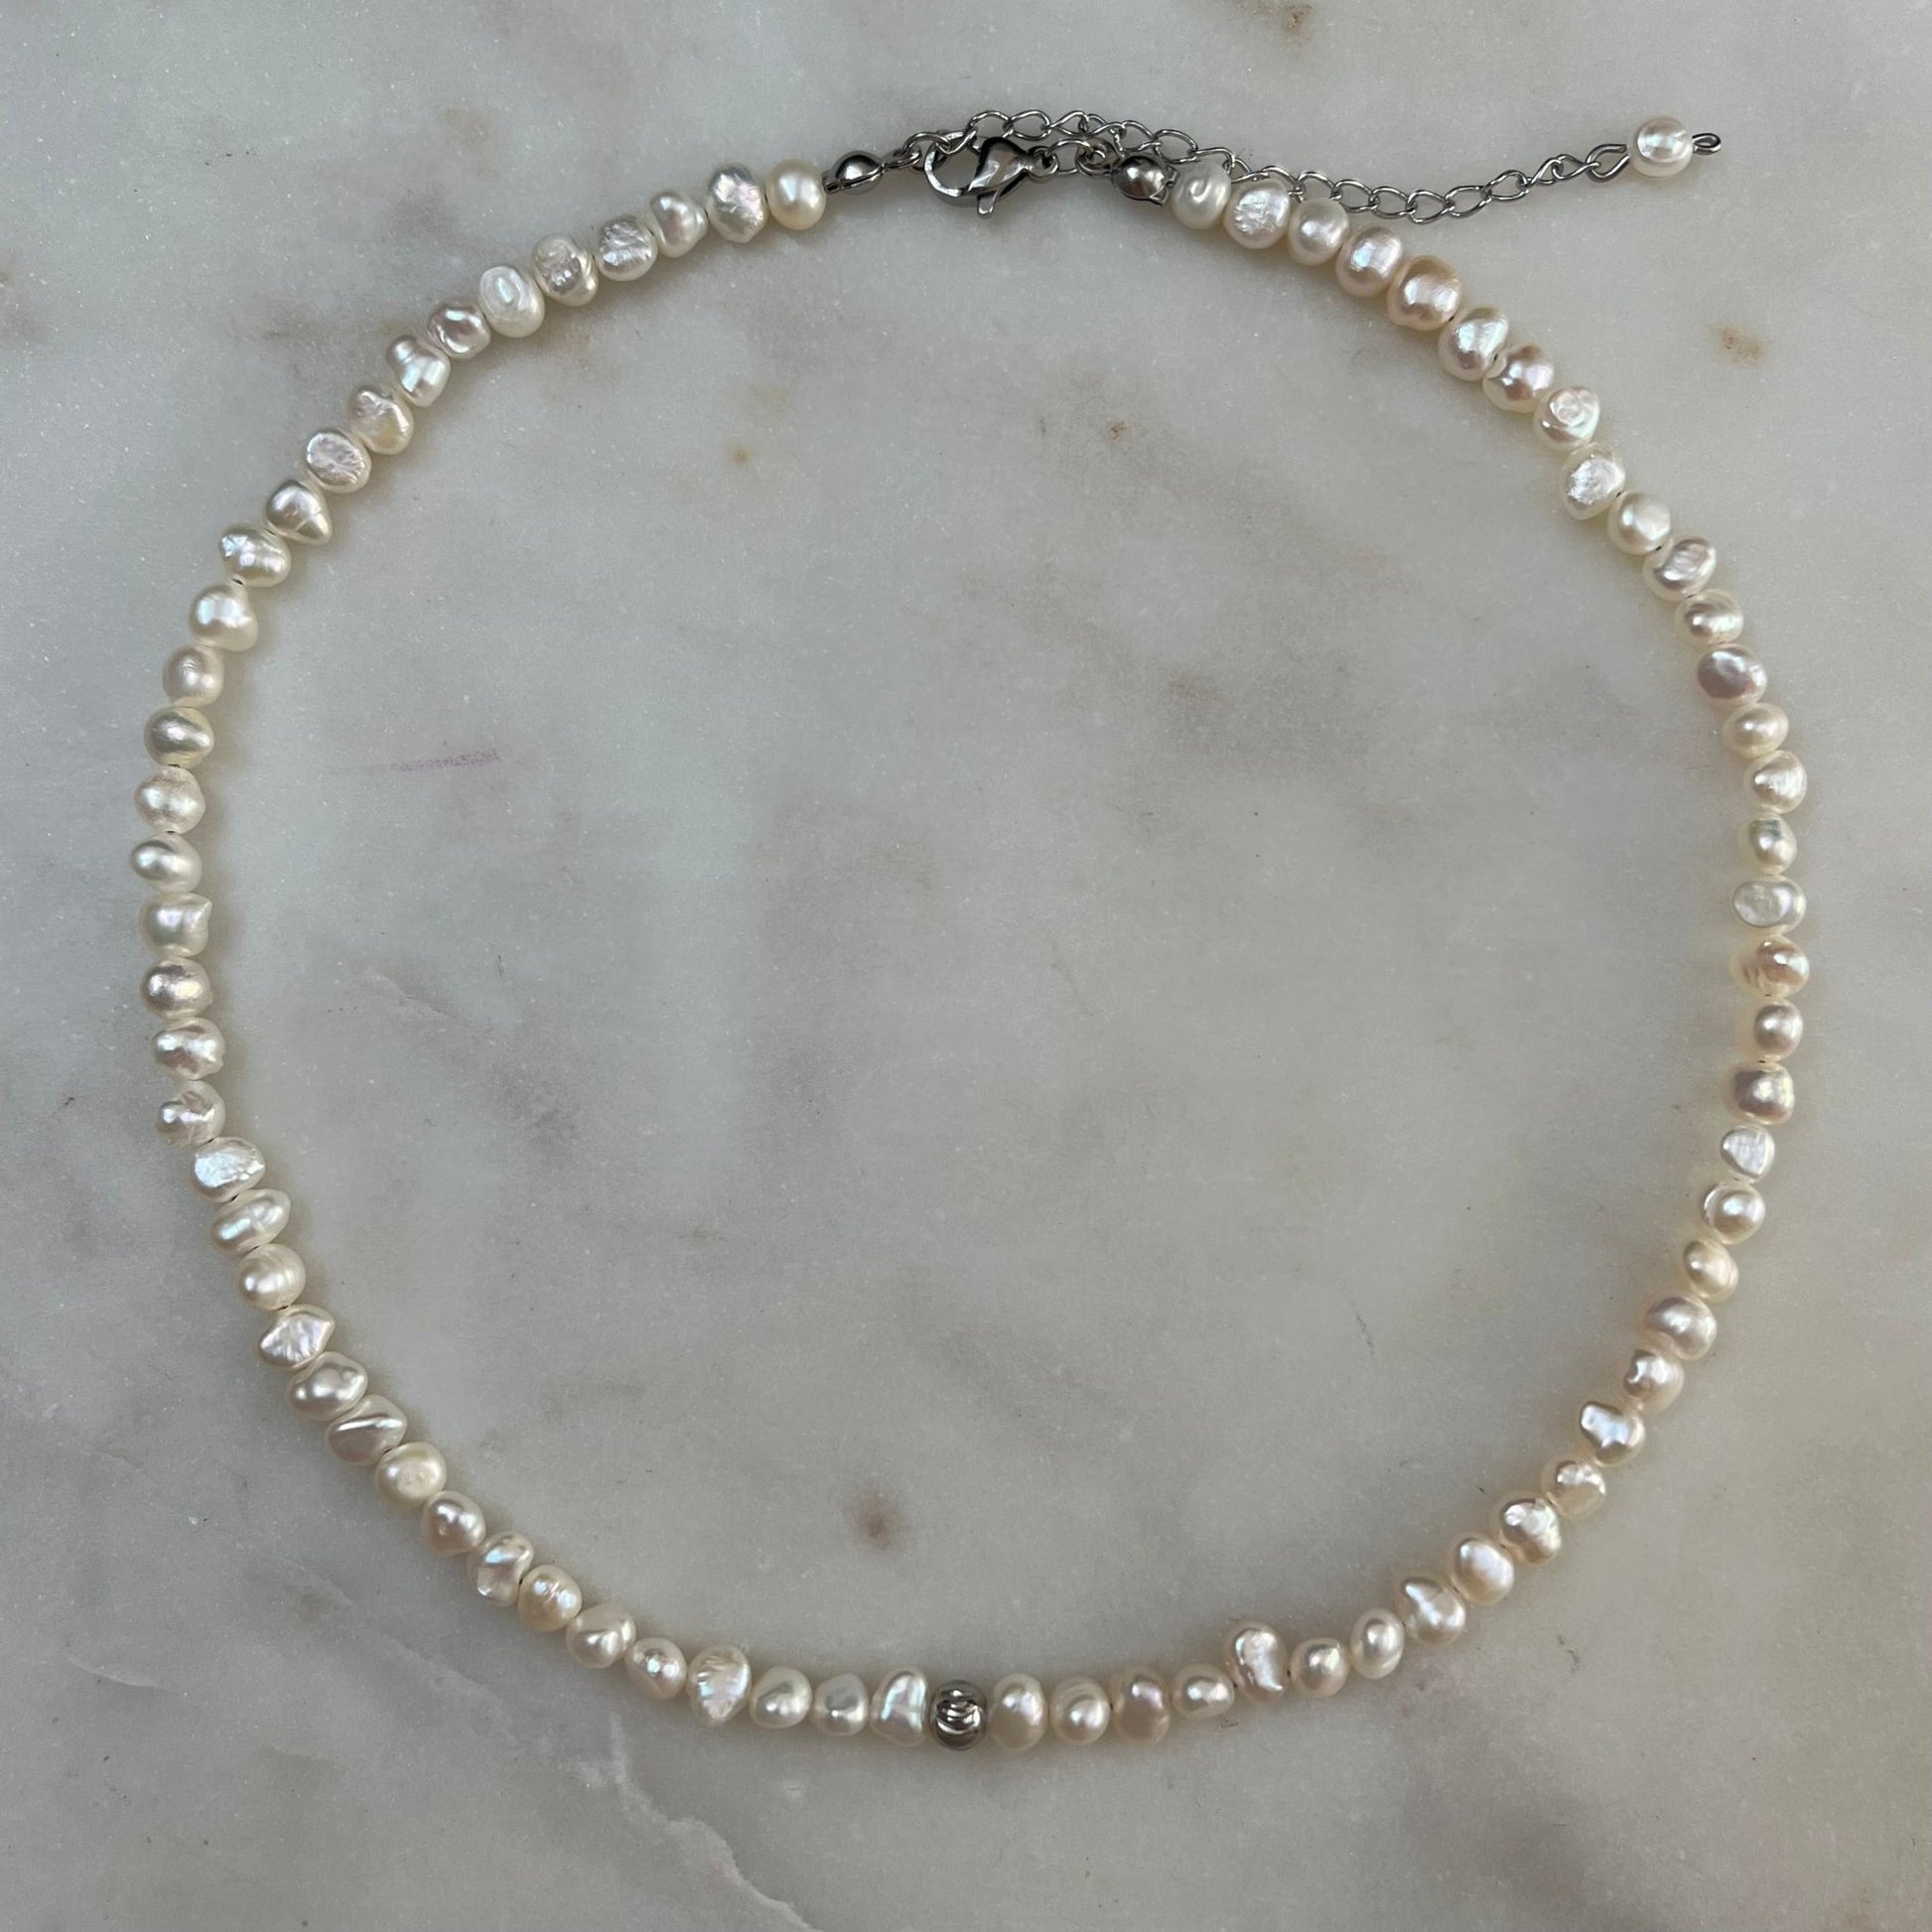 Perlový náhrdelník,  Pravy perlový náhrdelník,  Perlový náhrdelník bižuterie,  Perlový náhrdelník z mořských perel, Perlový náhrdelník choker, perlové šperky,  Sladkovodní perly,  Mořské perly,  Pravé říční perly, Říční perly, Zlaté šperky s perlou,  Sladkovodní perly